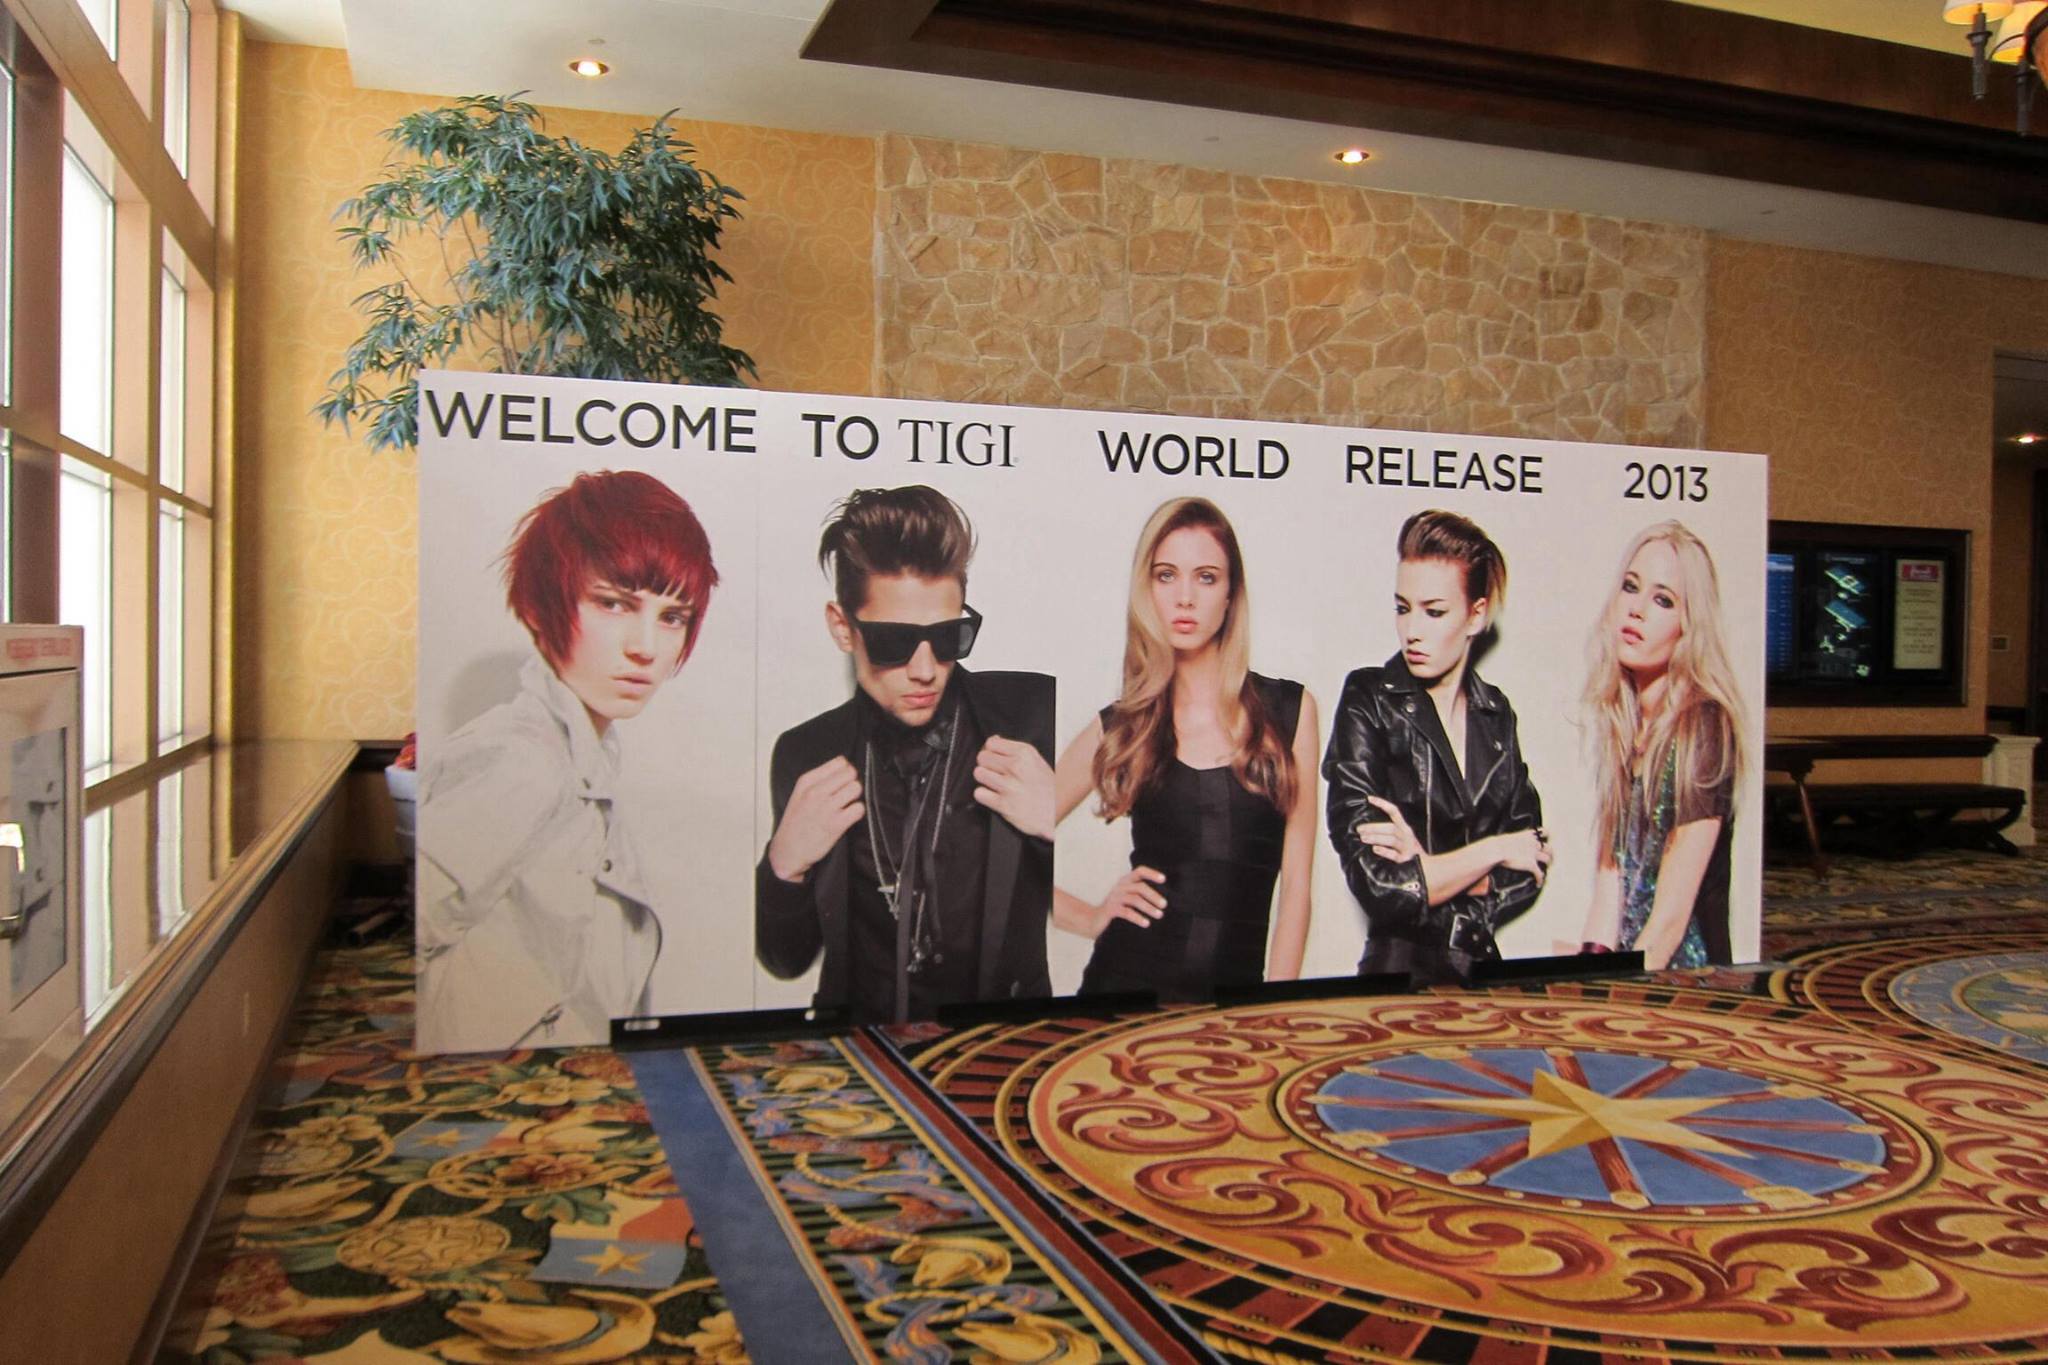 TIGI-World-Release-2013 (1).jpg